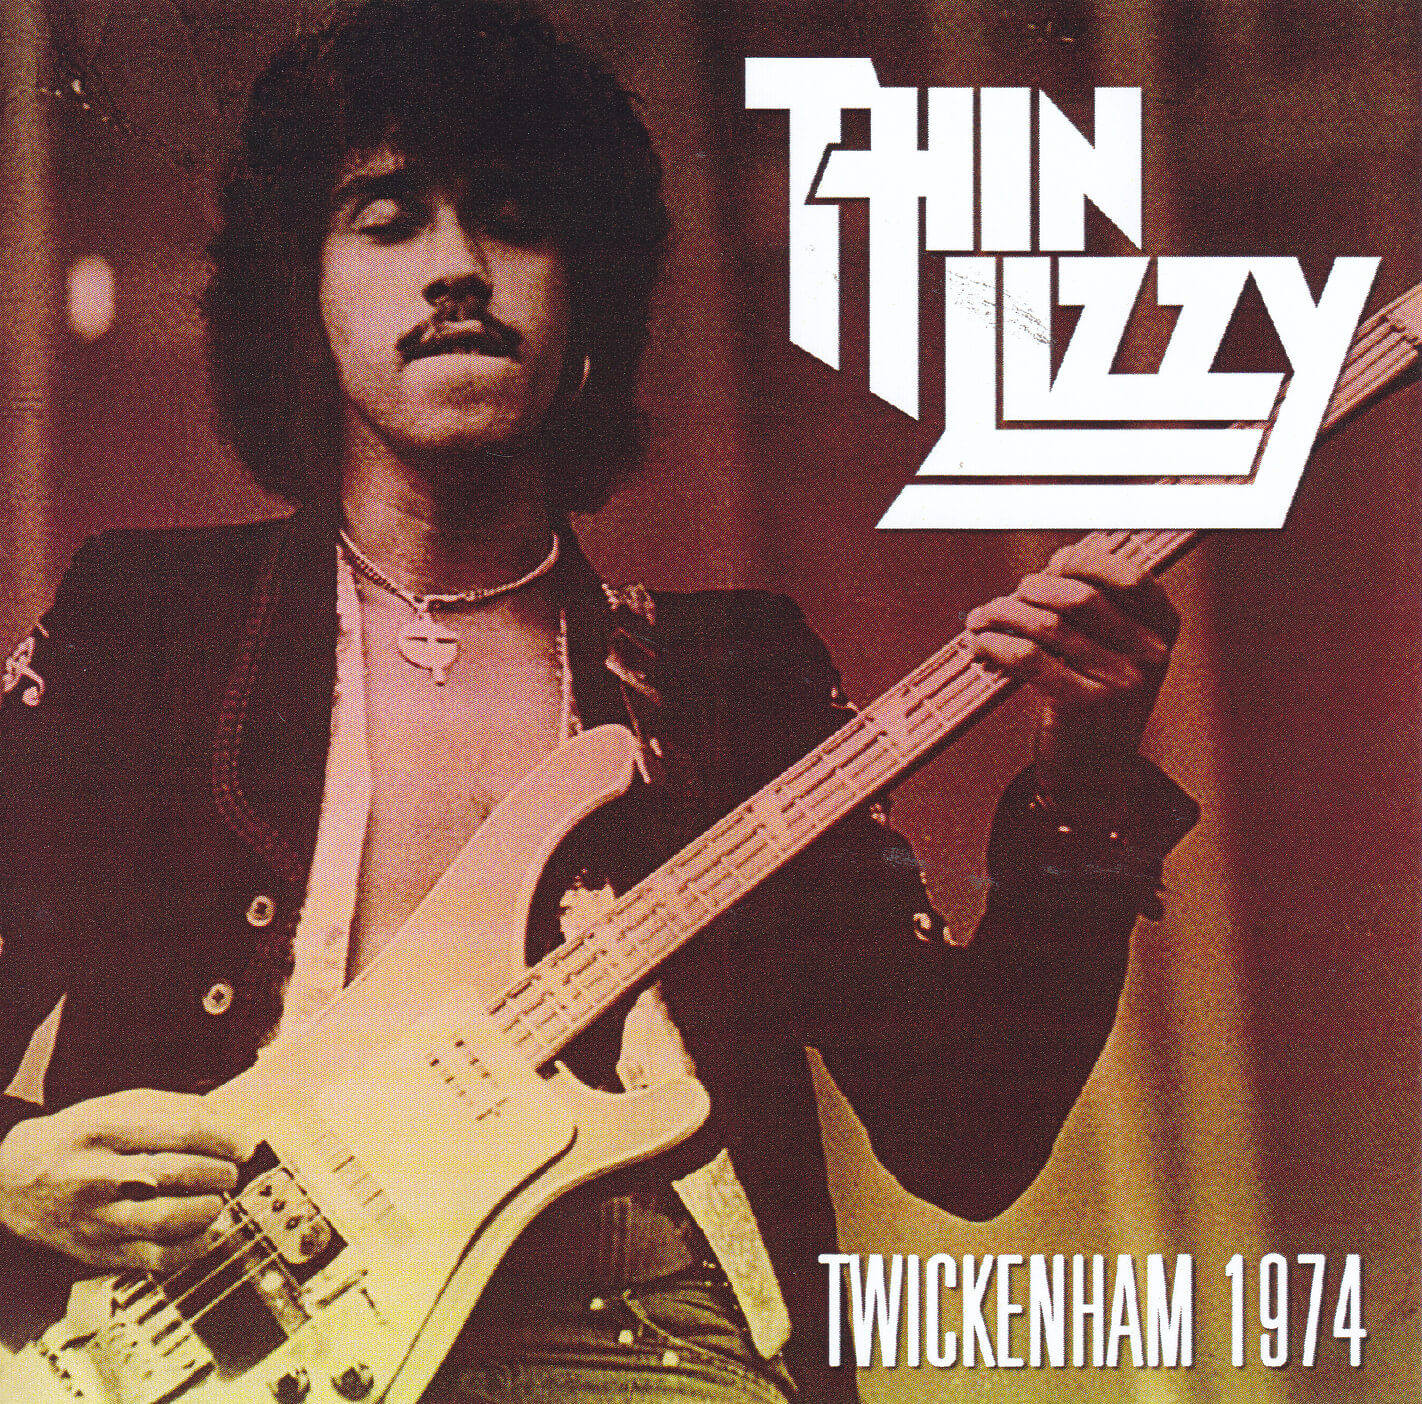 thin lizzy tour dates 1974